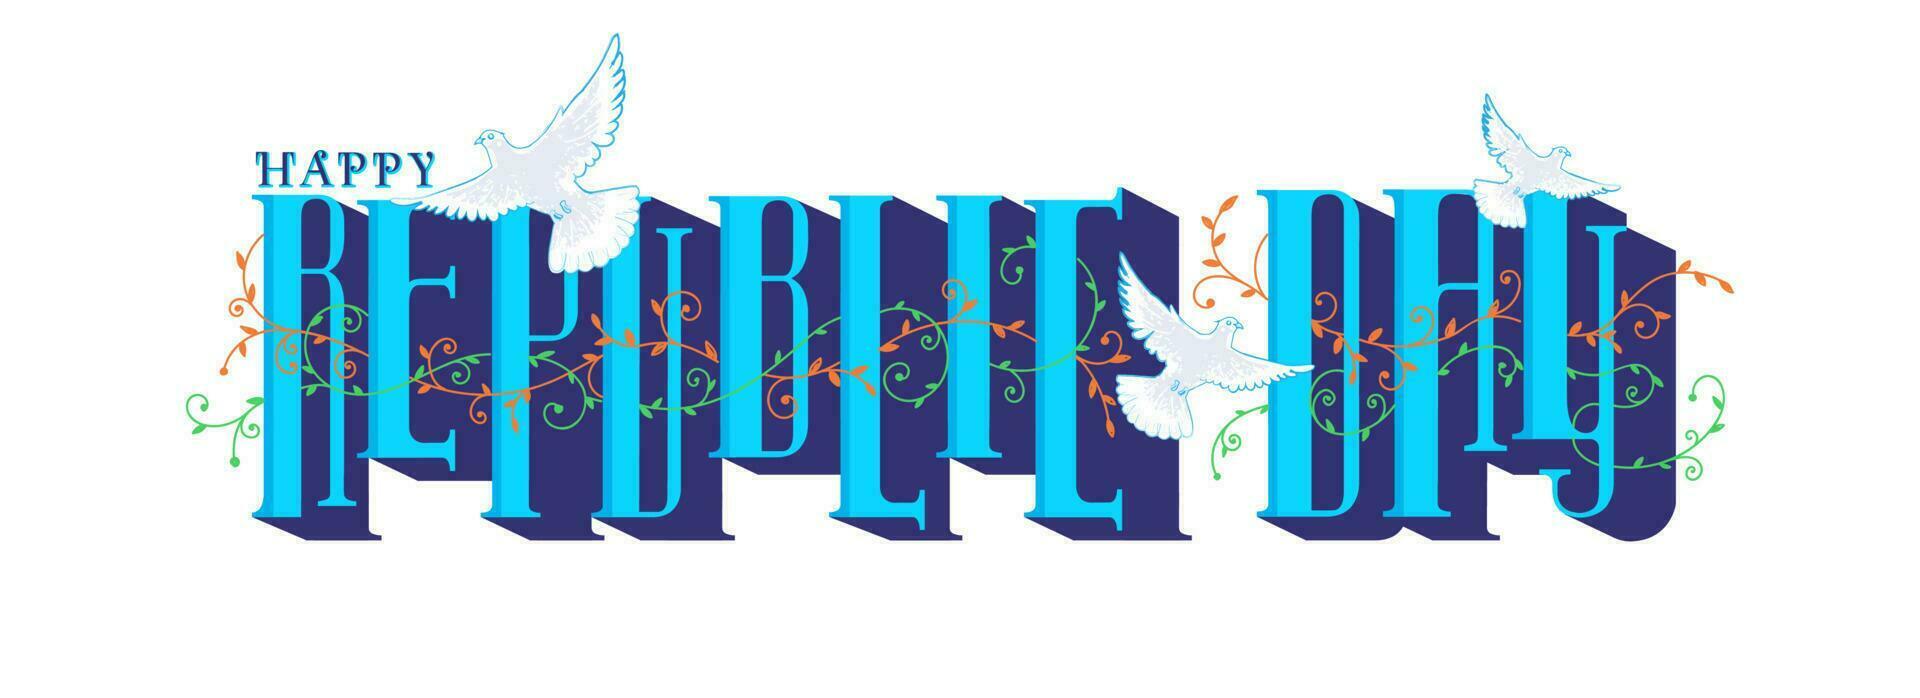 Blau glücklich Republik Tag Text mit fliegend Taube und Motive auf Weiß Hintergrund. Header oder Banner Design. vektor